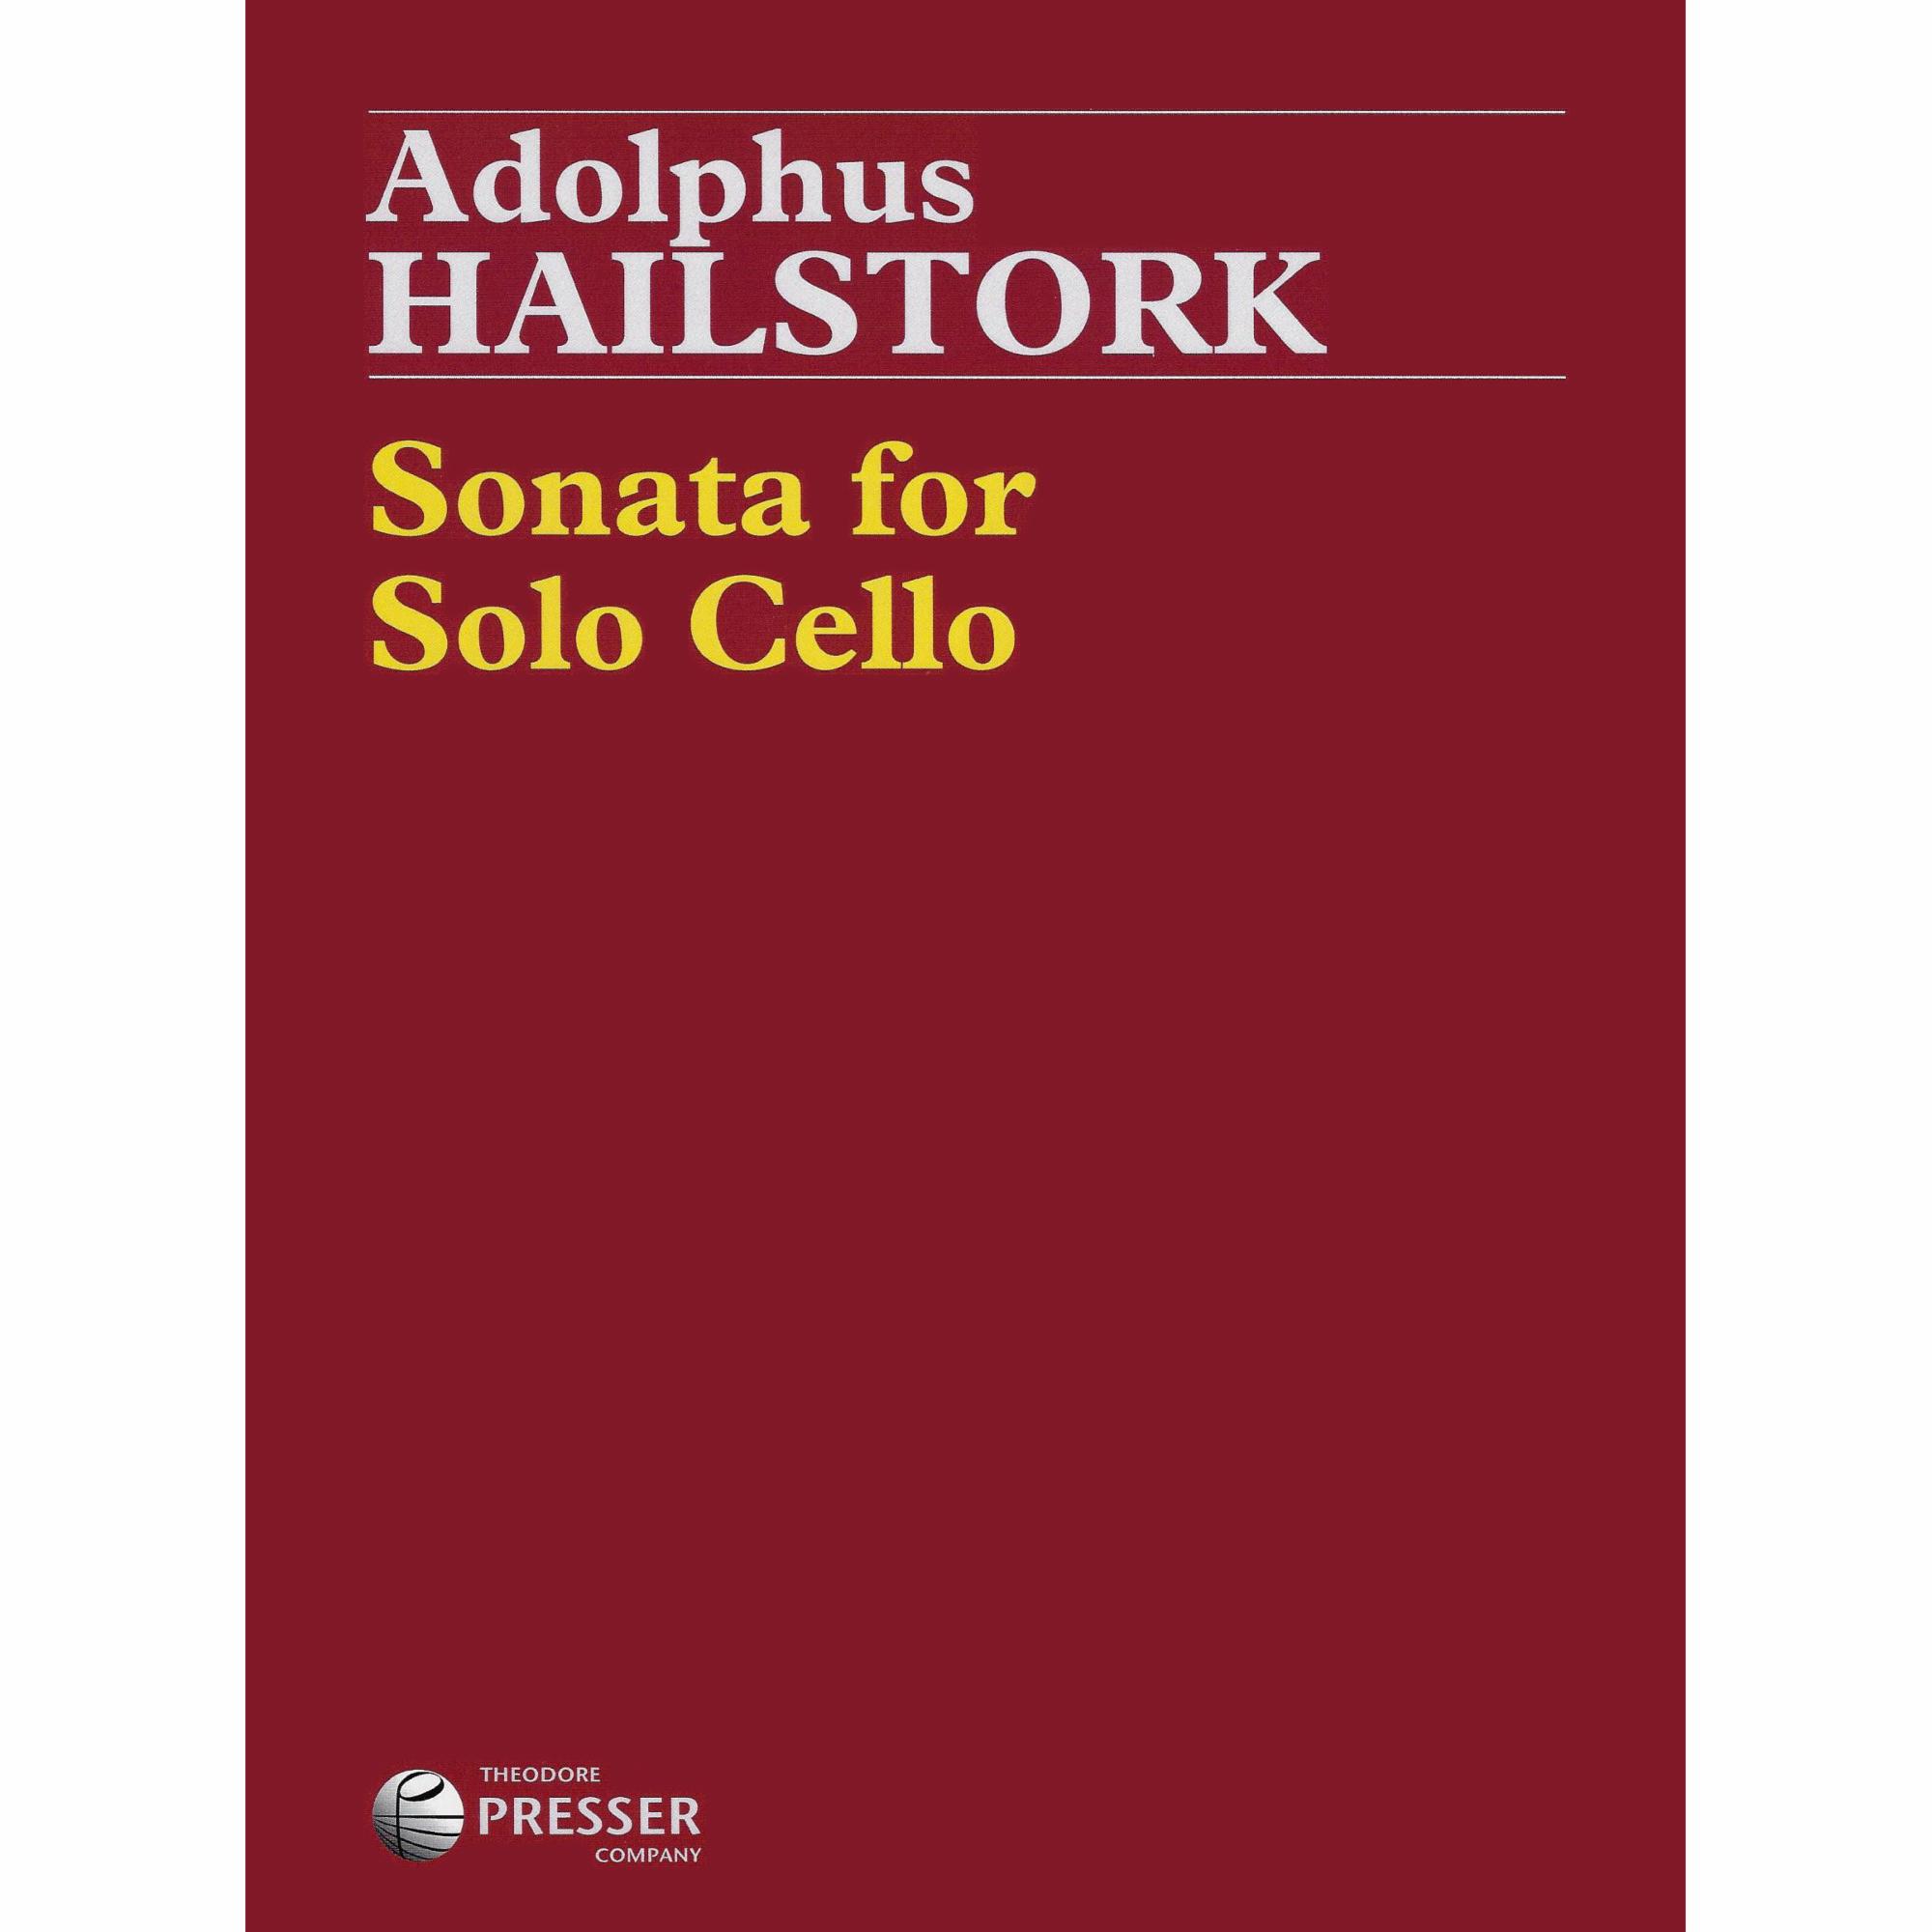 Hailstork -- Sonata for Solo Cello